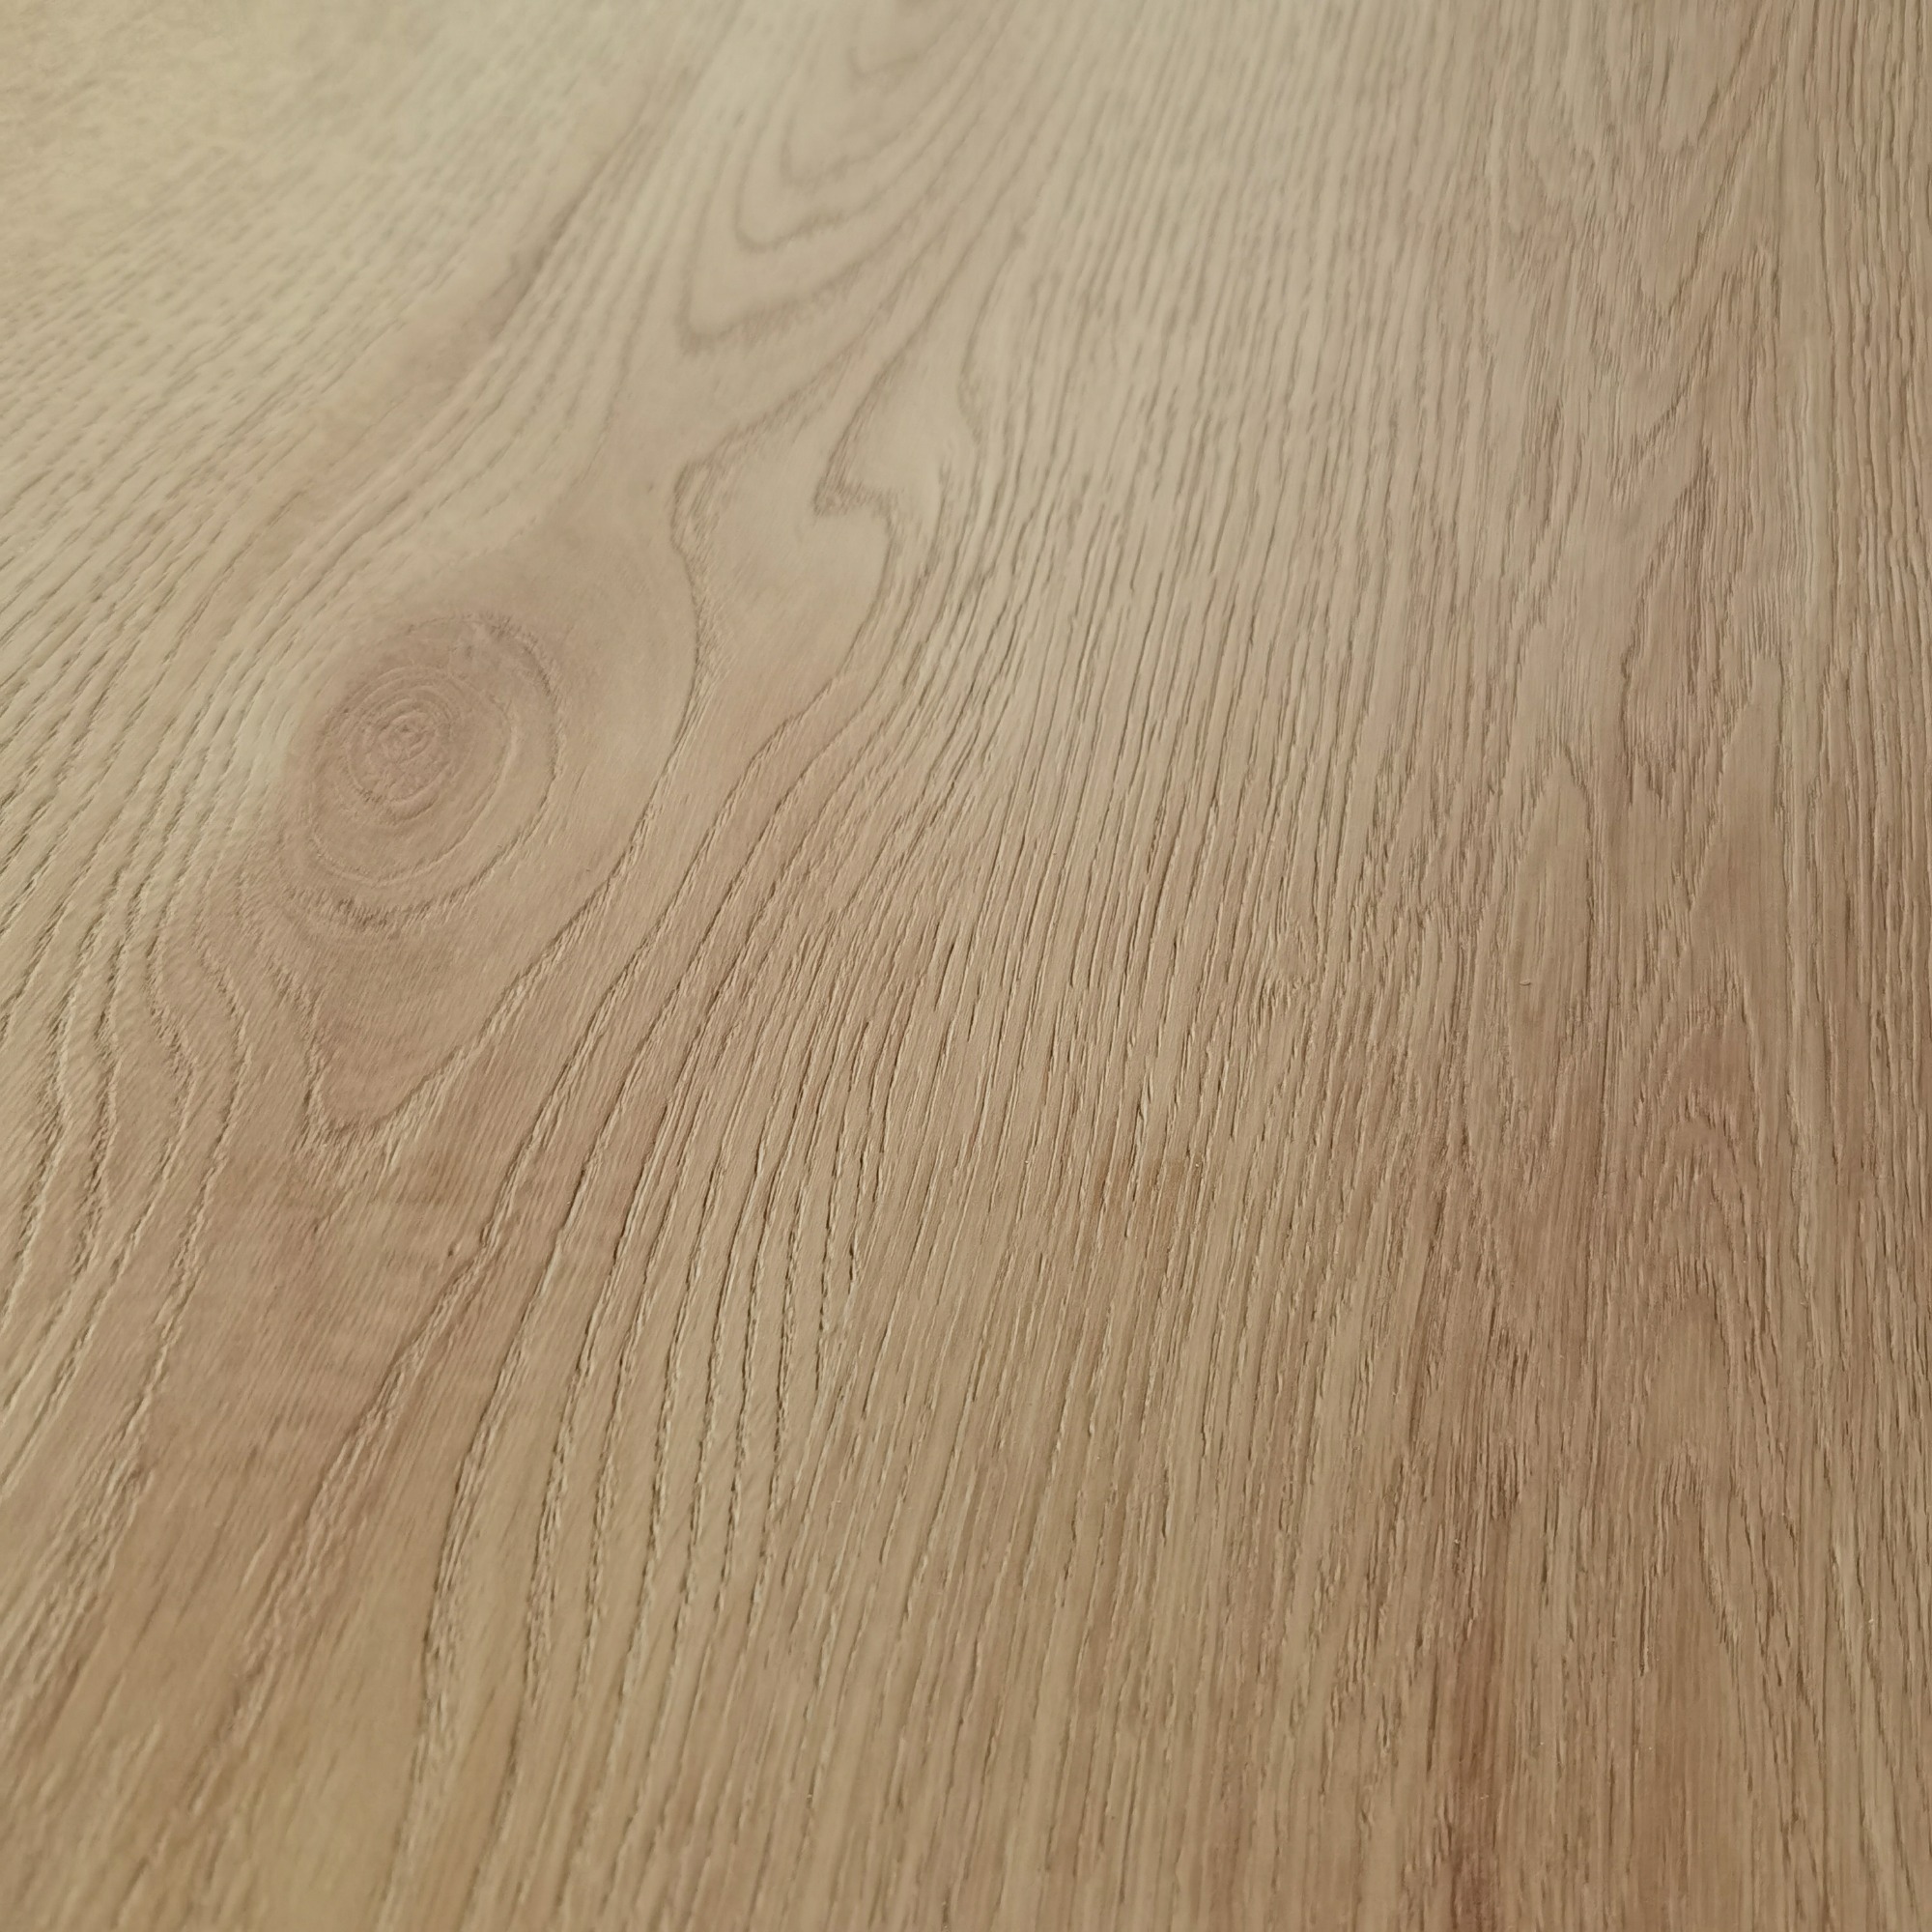 DARE wood synchronized melamine board for modular furniture